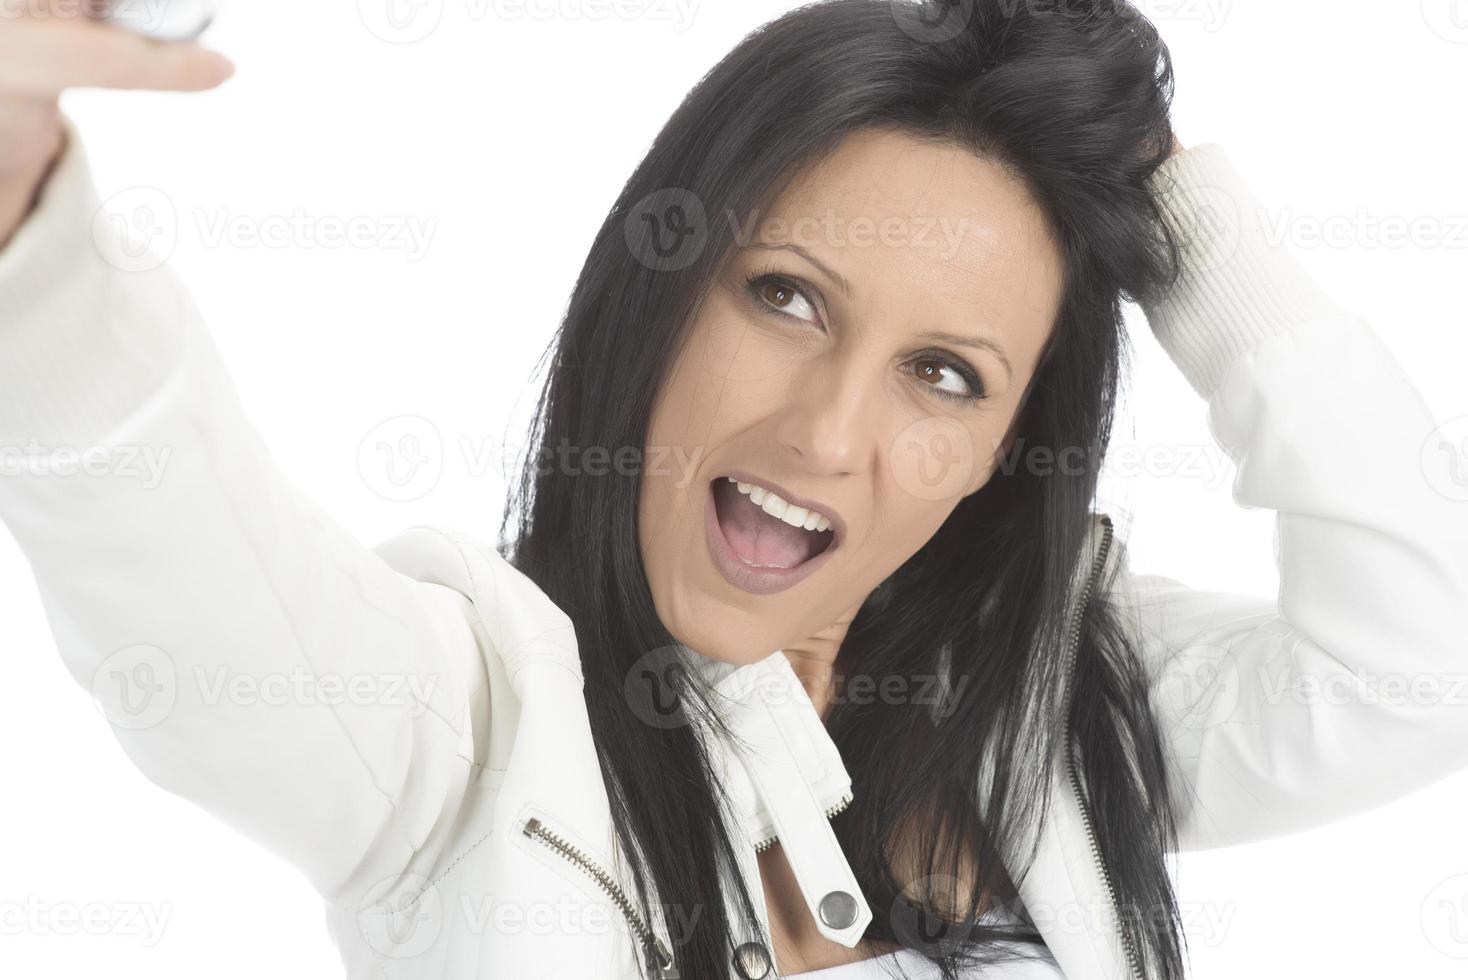 imagen de una hermosa morena riéndose mientras tomaba una foto selfie en el celular